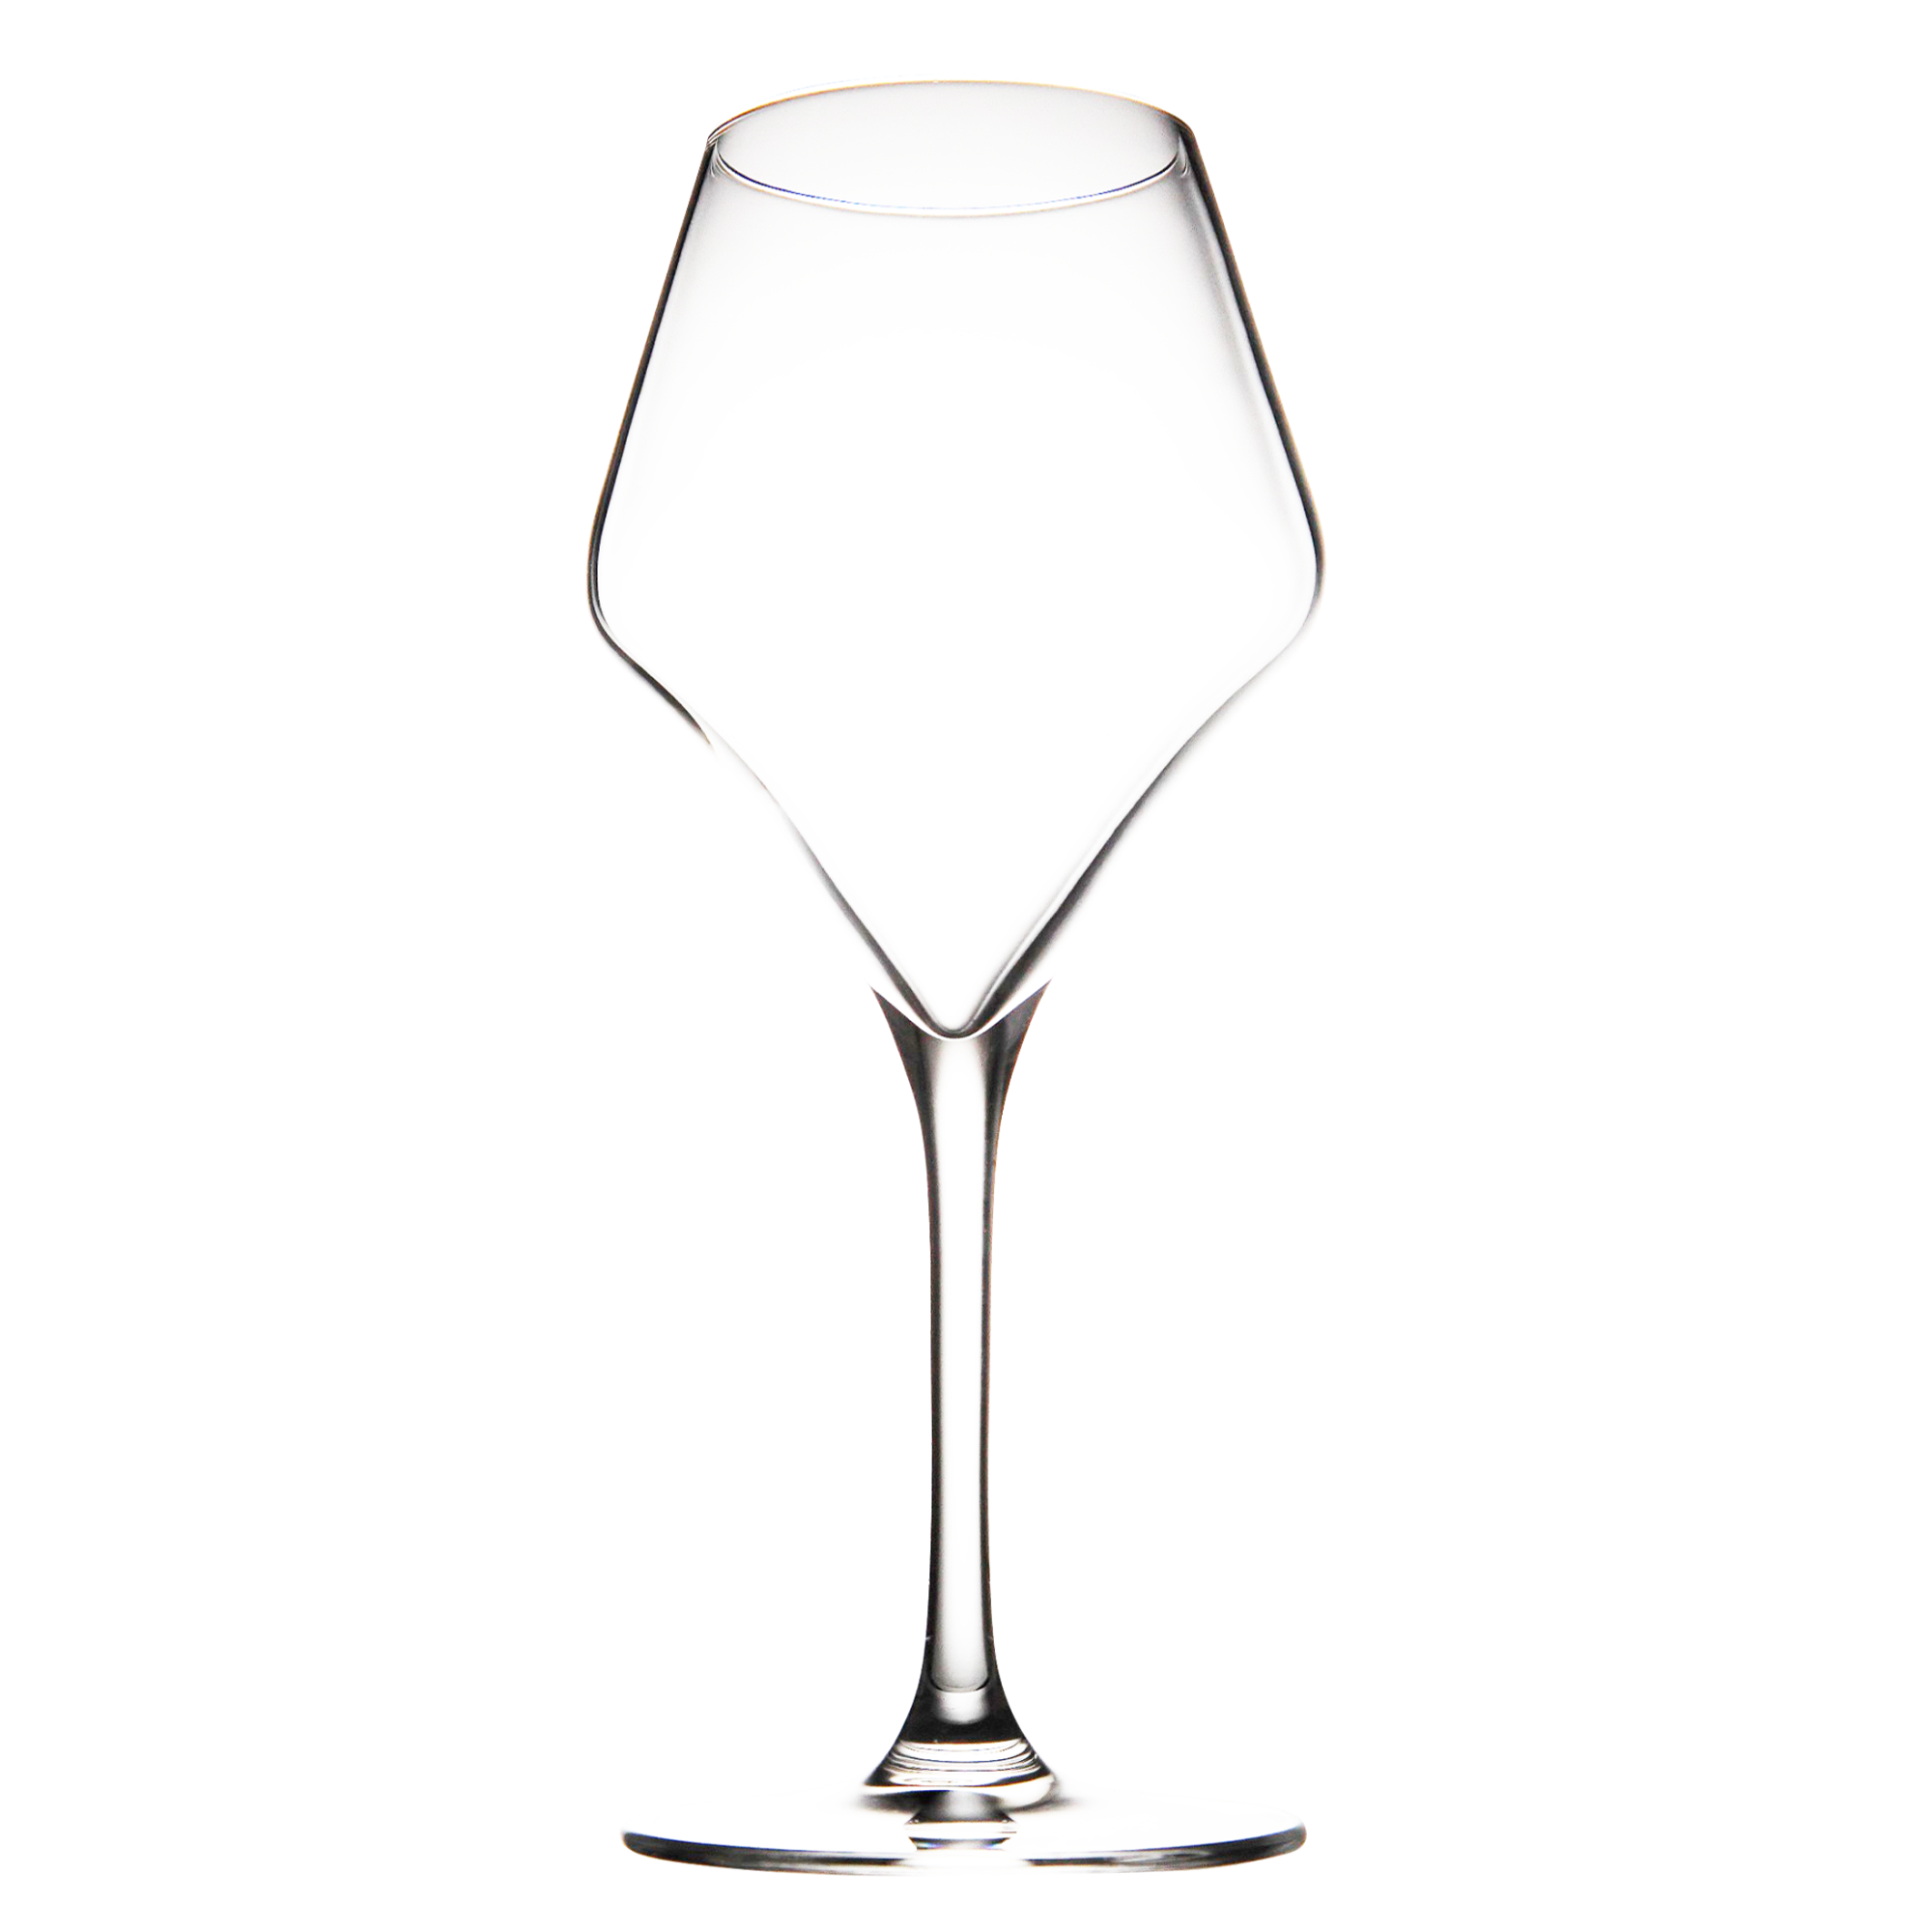 RONA ARAM 錐形系列專業酒杯 Bardeaux波爾多杯 500ml 2入